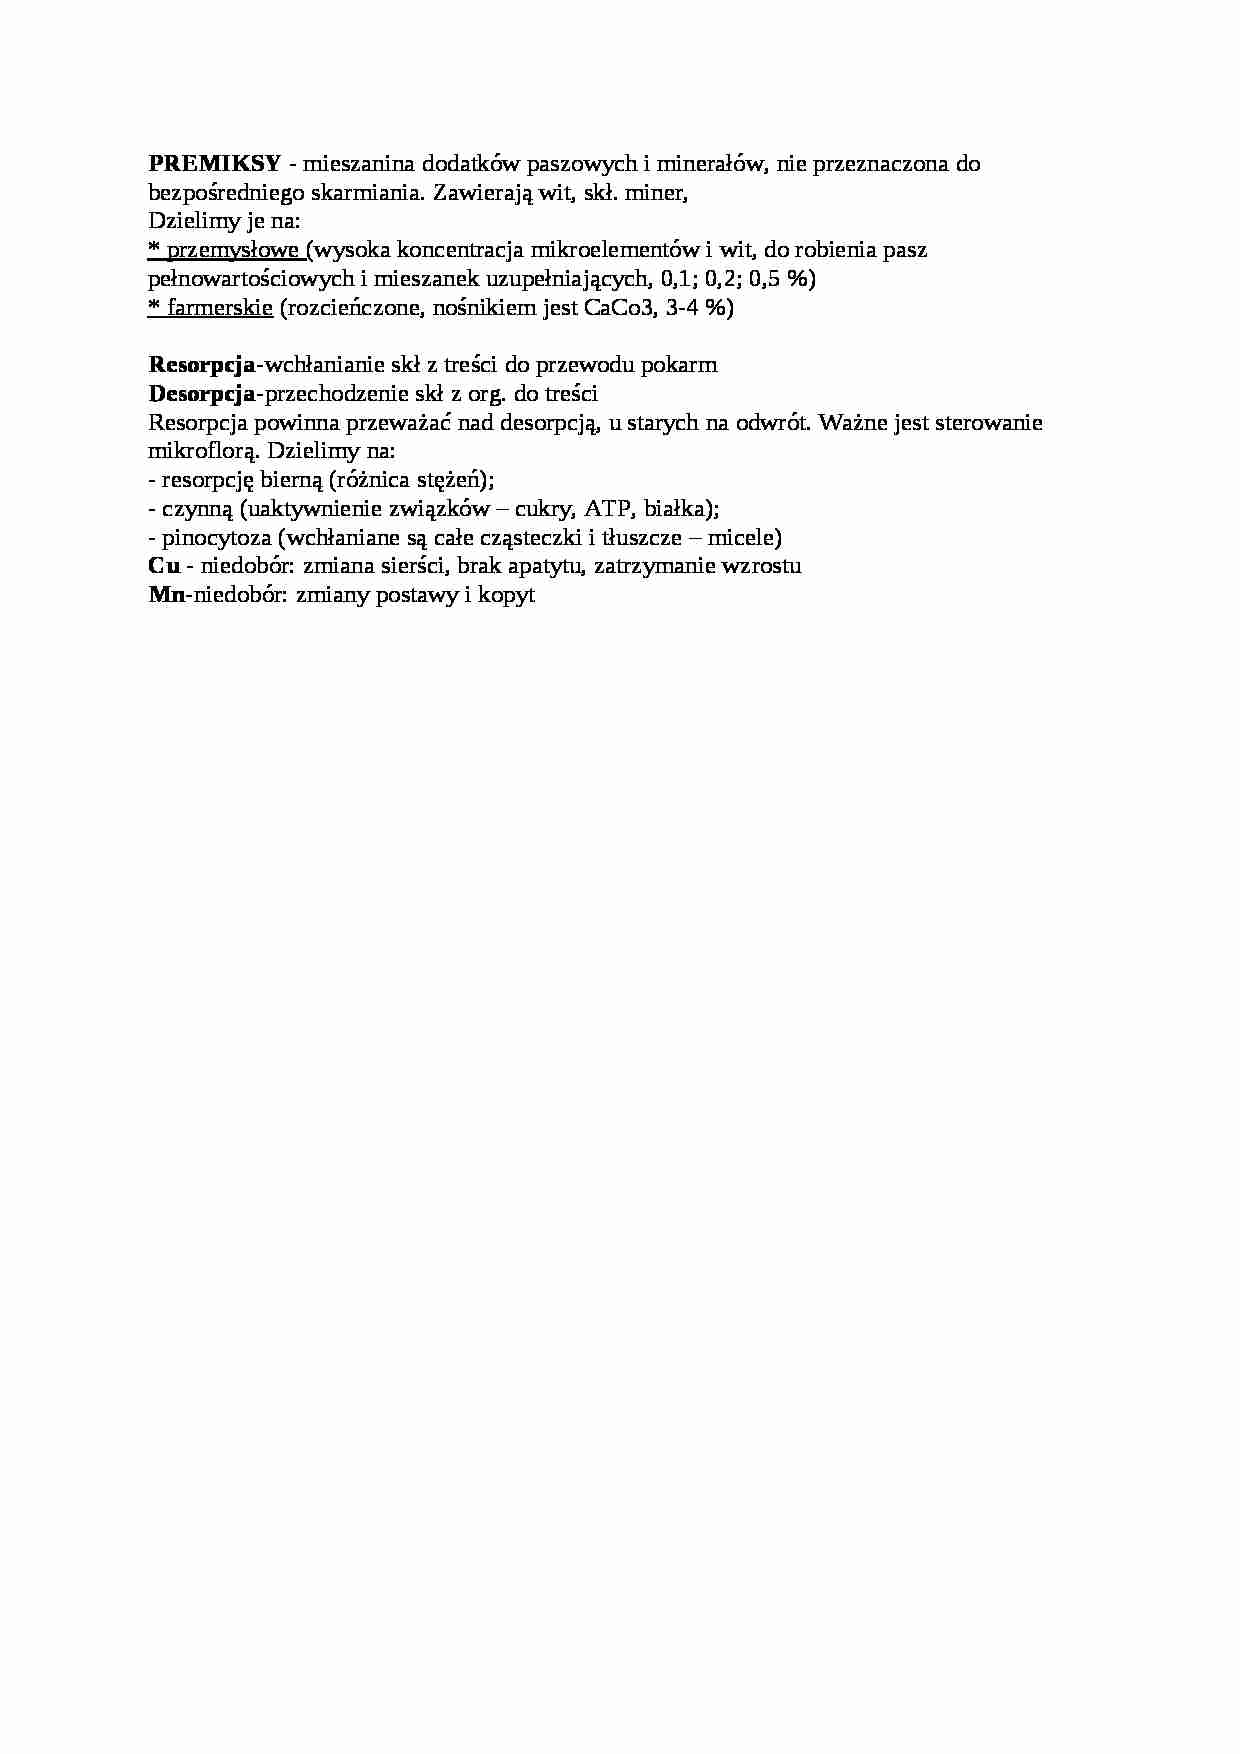 Trawienie poligastryczne- premiksy - wykład, sem IV - strona 1